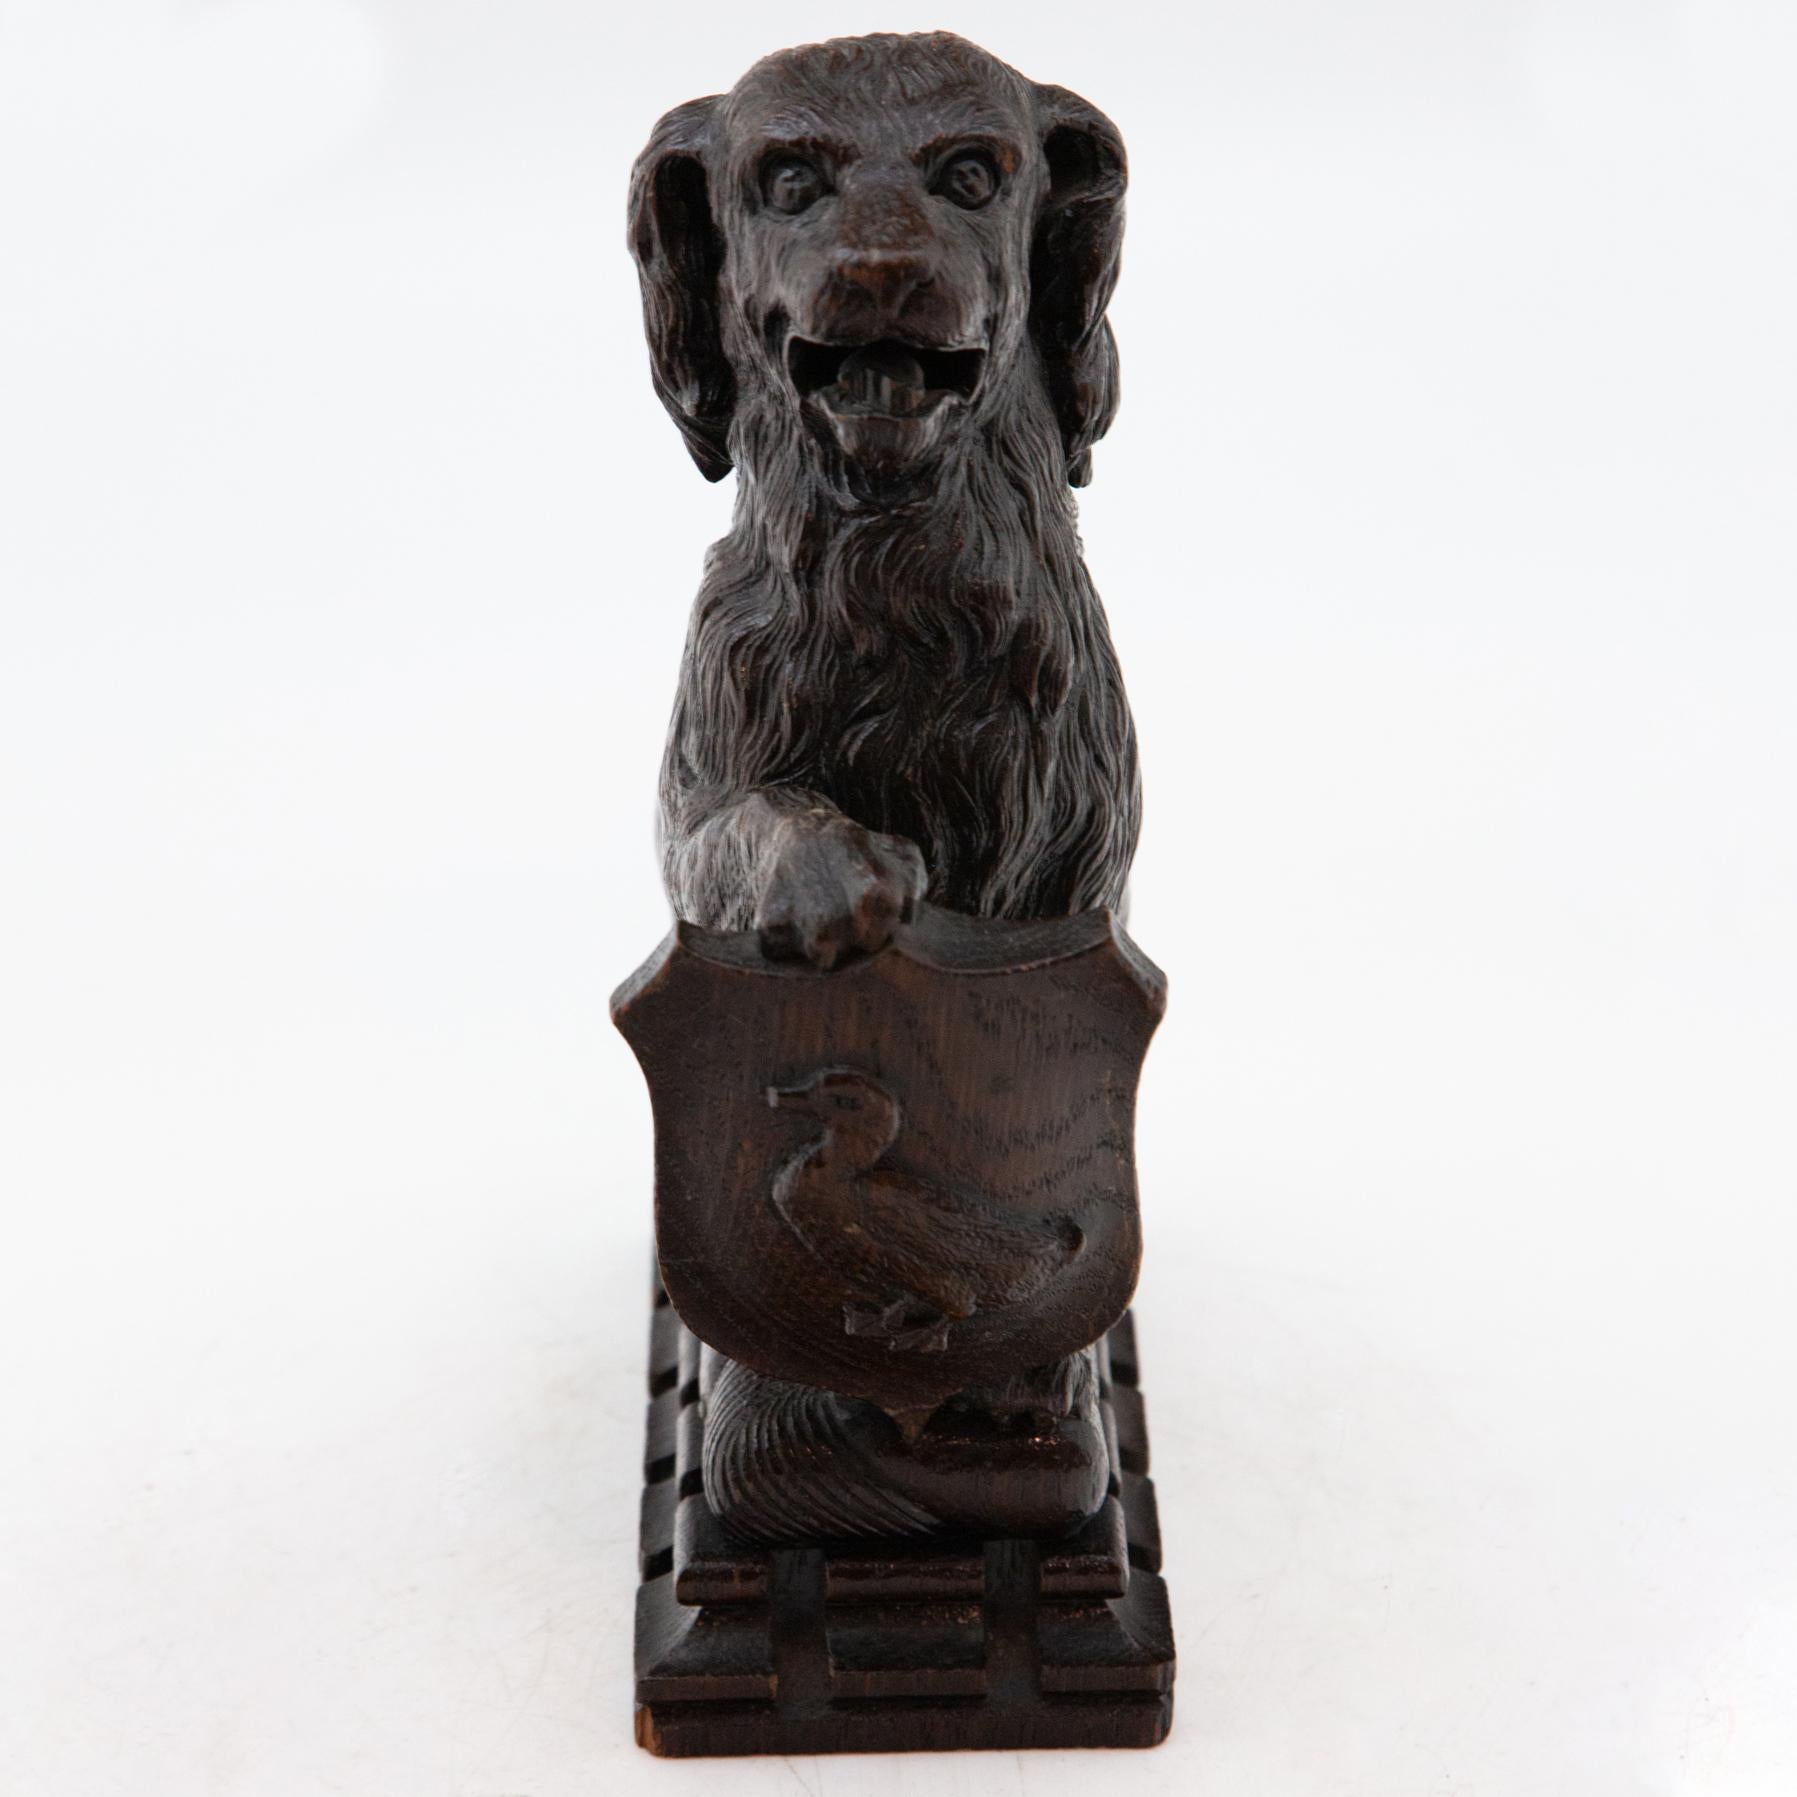 Antique carved Black Forest dog holding duck crest. Measures: 9